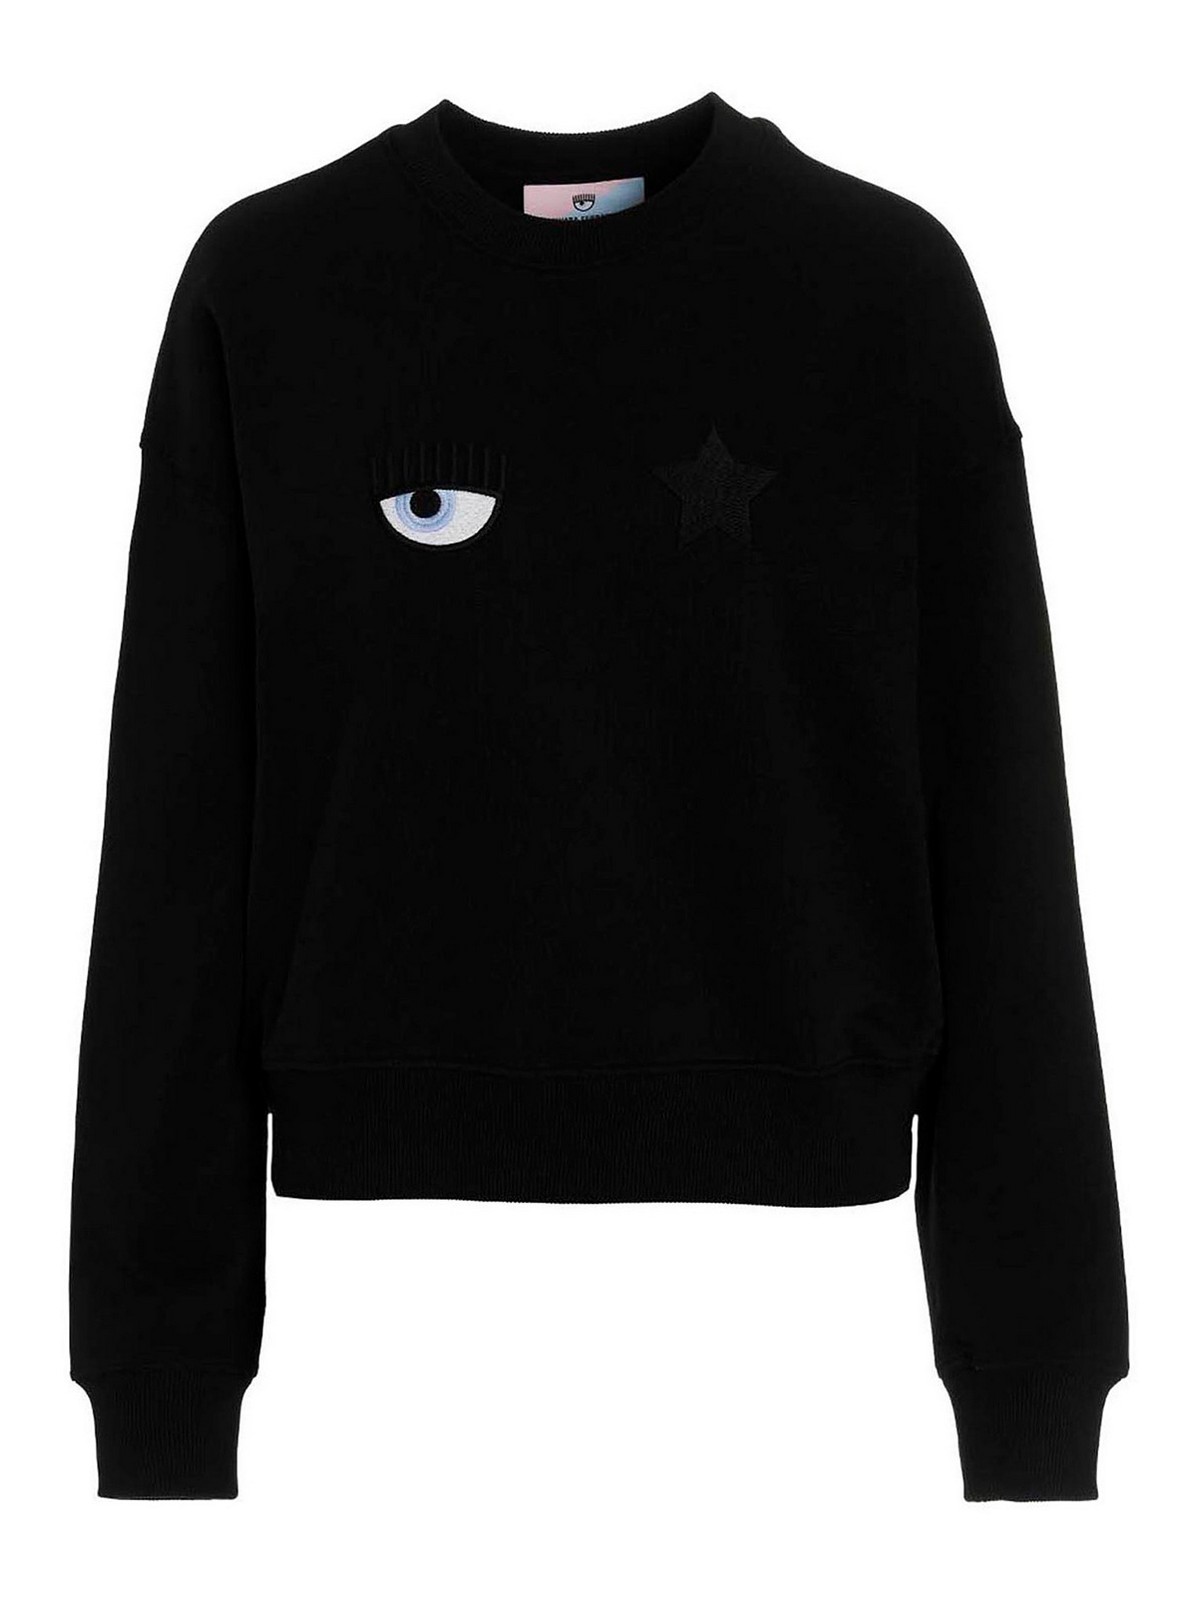 Sweatshirts & Sweaters Chiara Ferragni - Eyestar sweatshirt ...